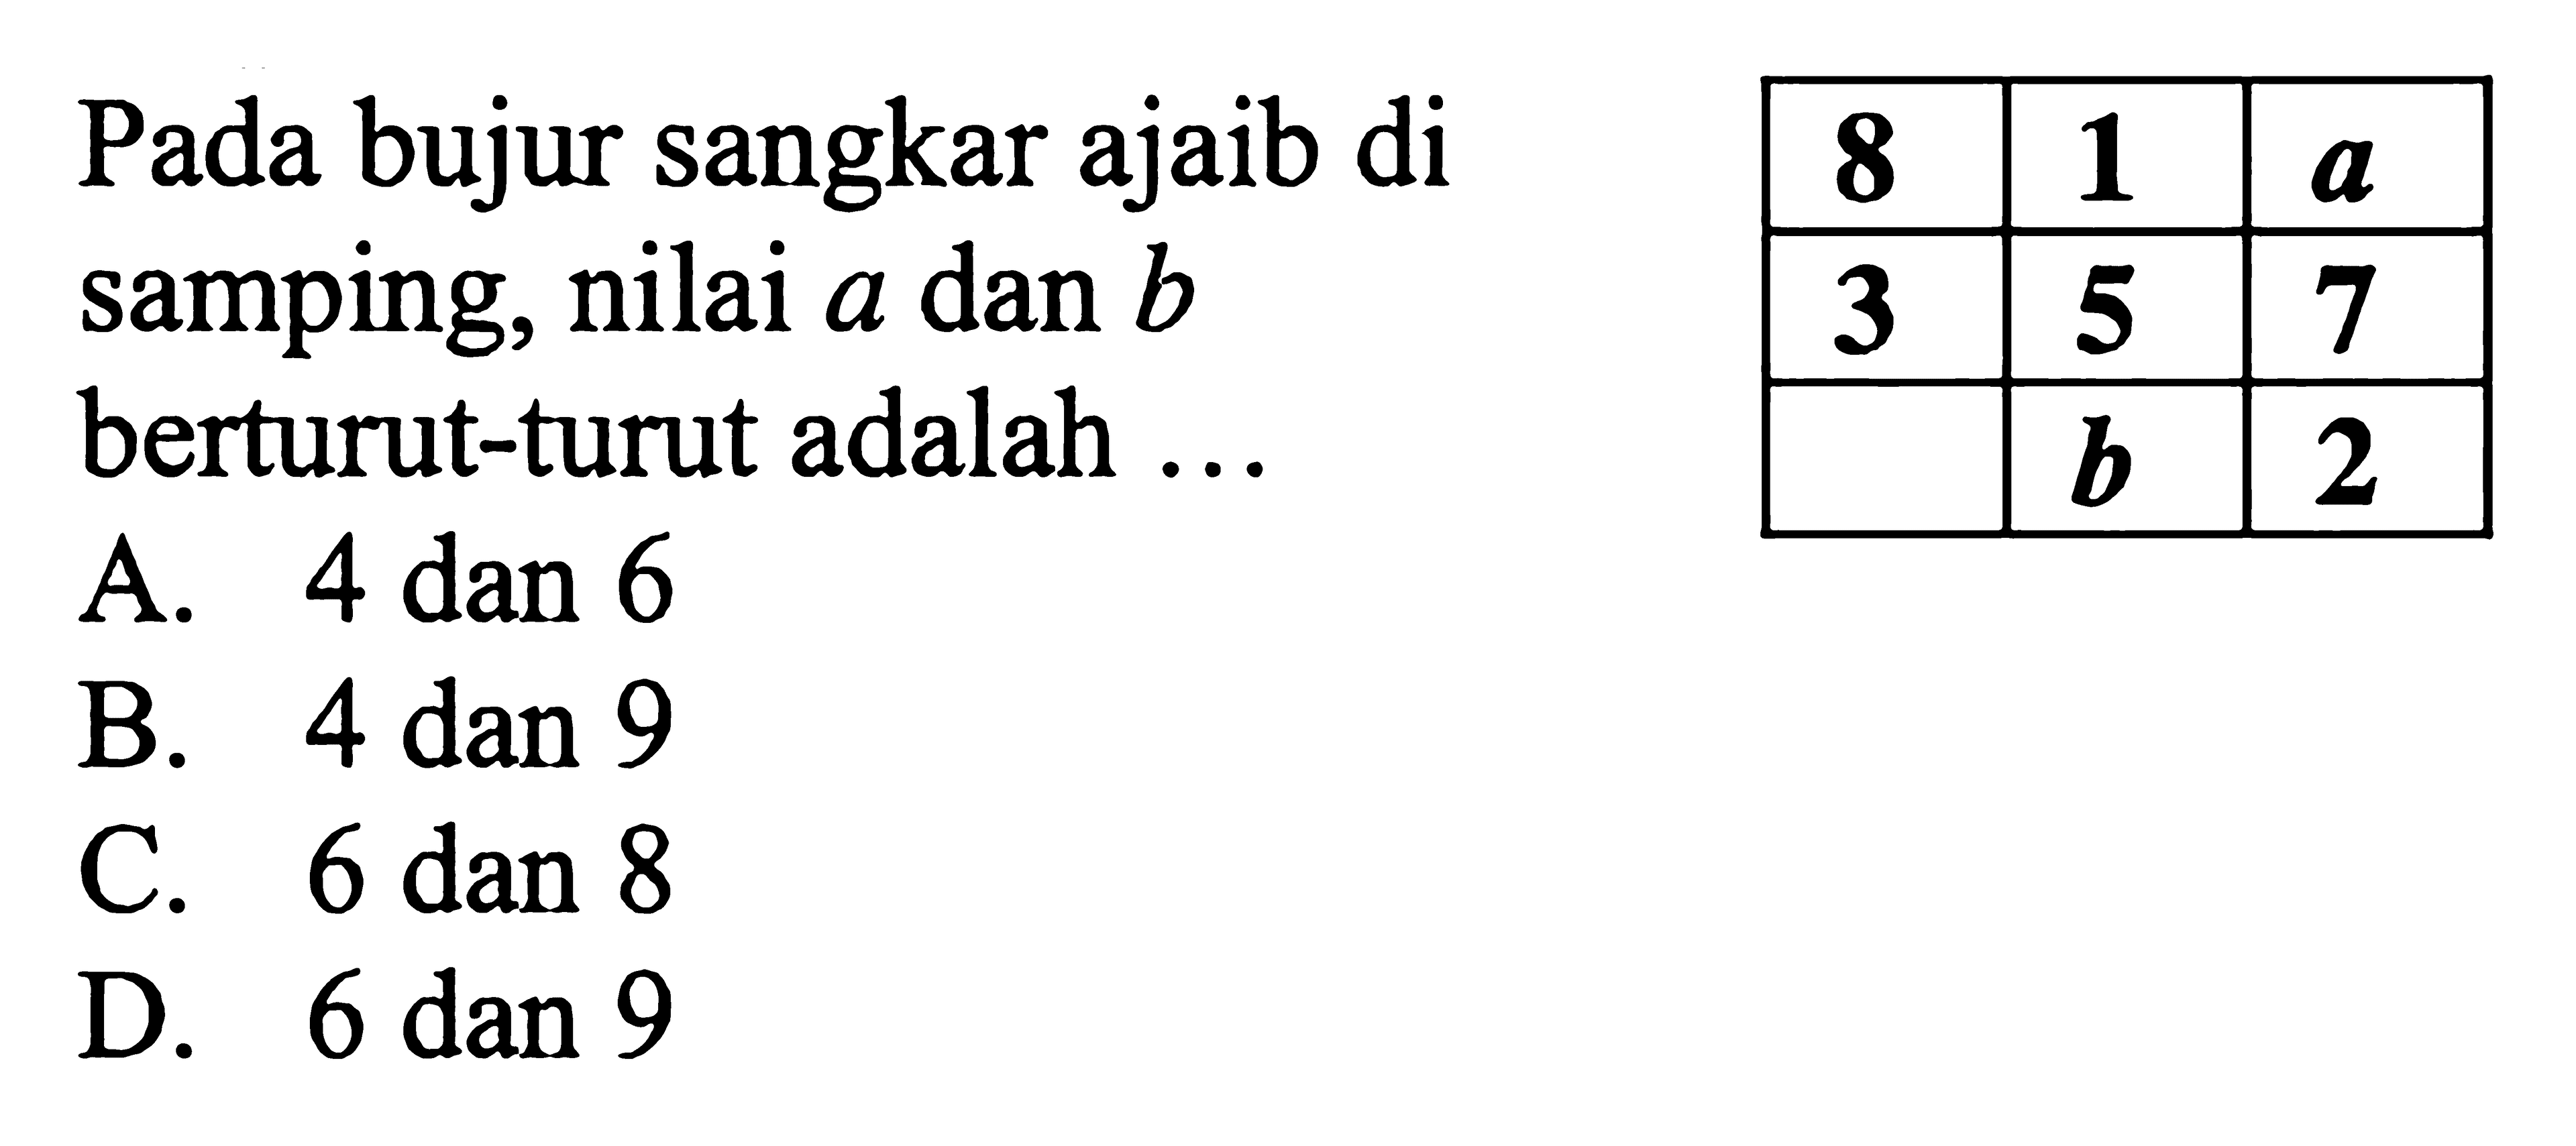 Pada bujur sangkar abajib di samping, nilai a dan b berturut - turut adalah ... A. 4 dan 6 B. 4 dan 9 C. 6 dan 8 D. 6 dan 9 8 1 a 3 5 7 b 2